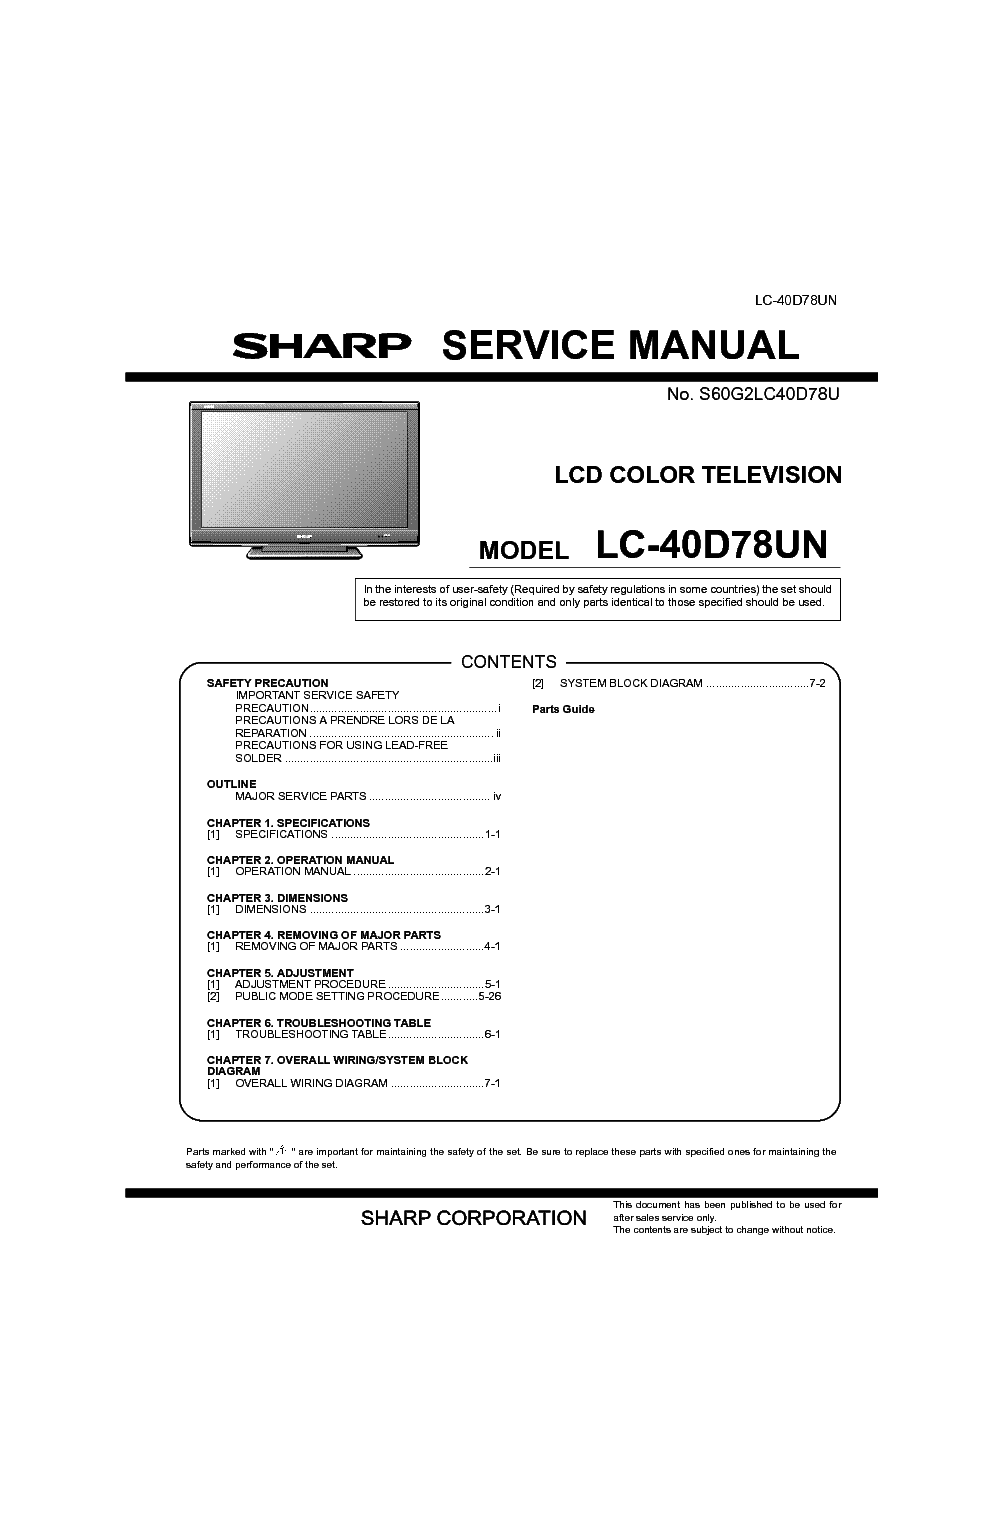 SHARP LC-40D78UN service manual (1st page)